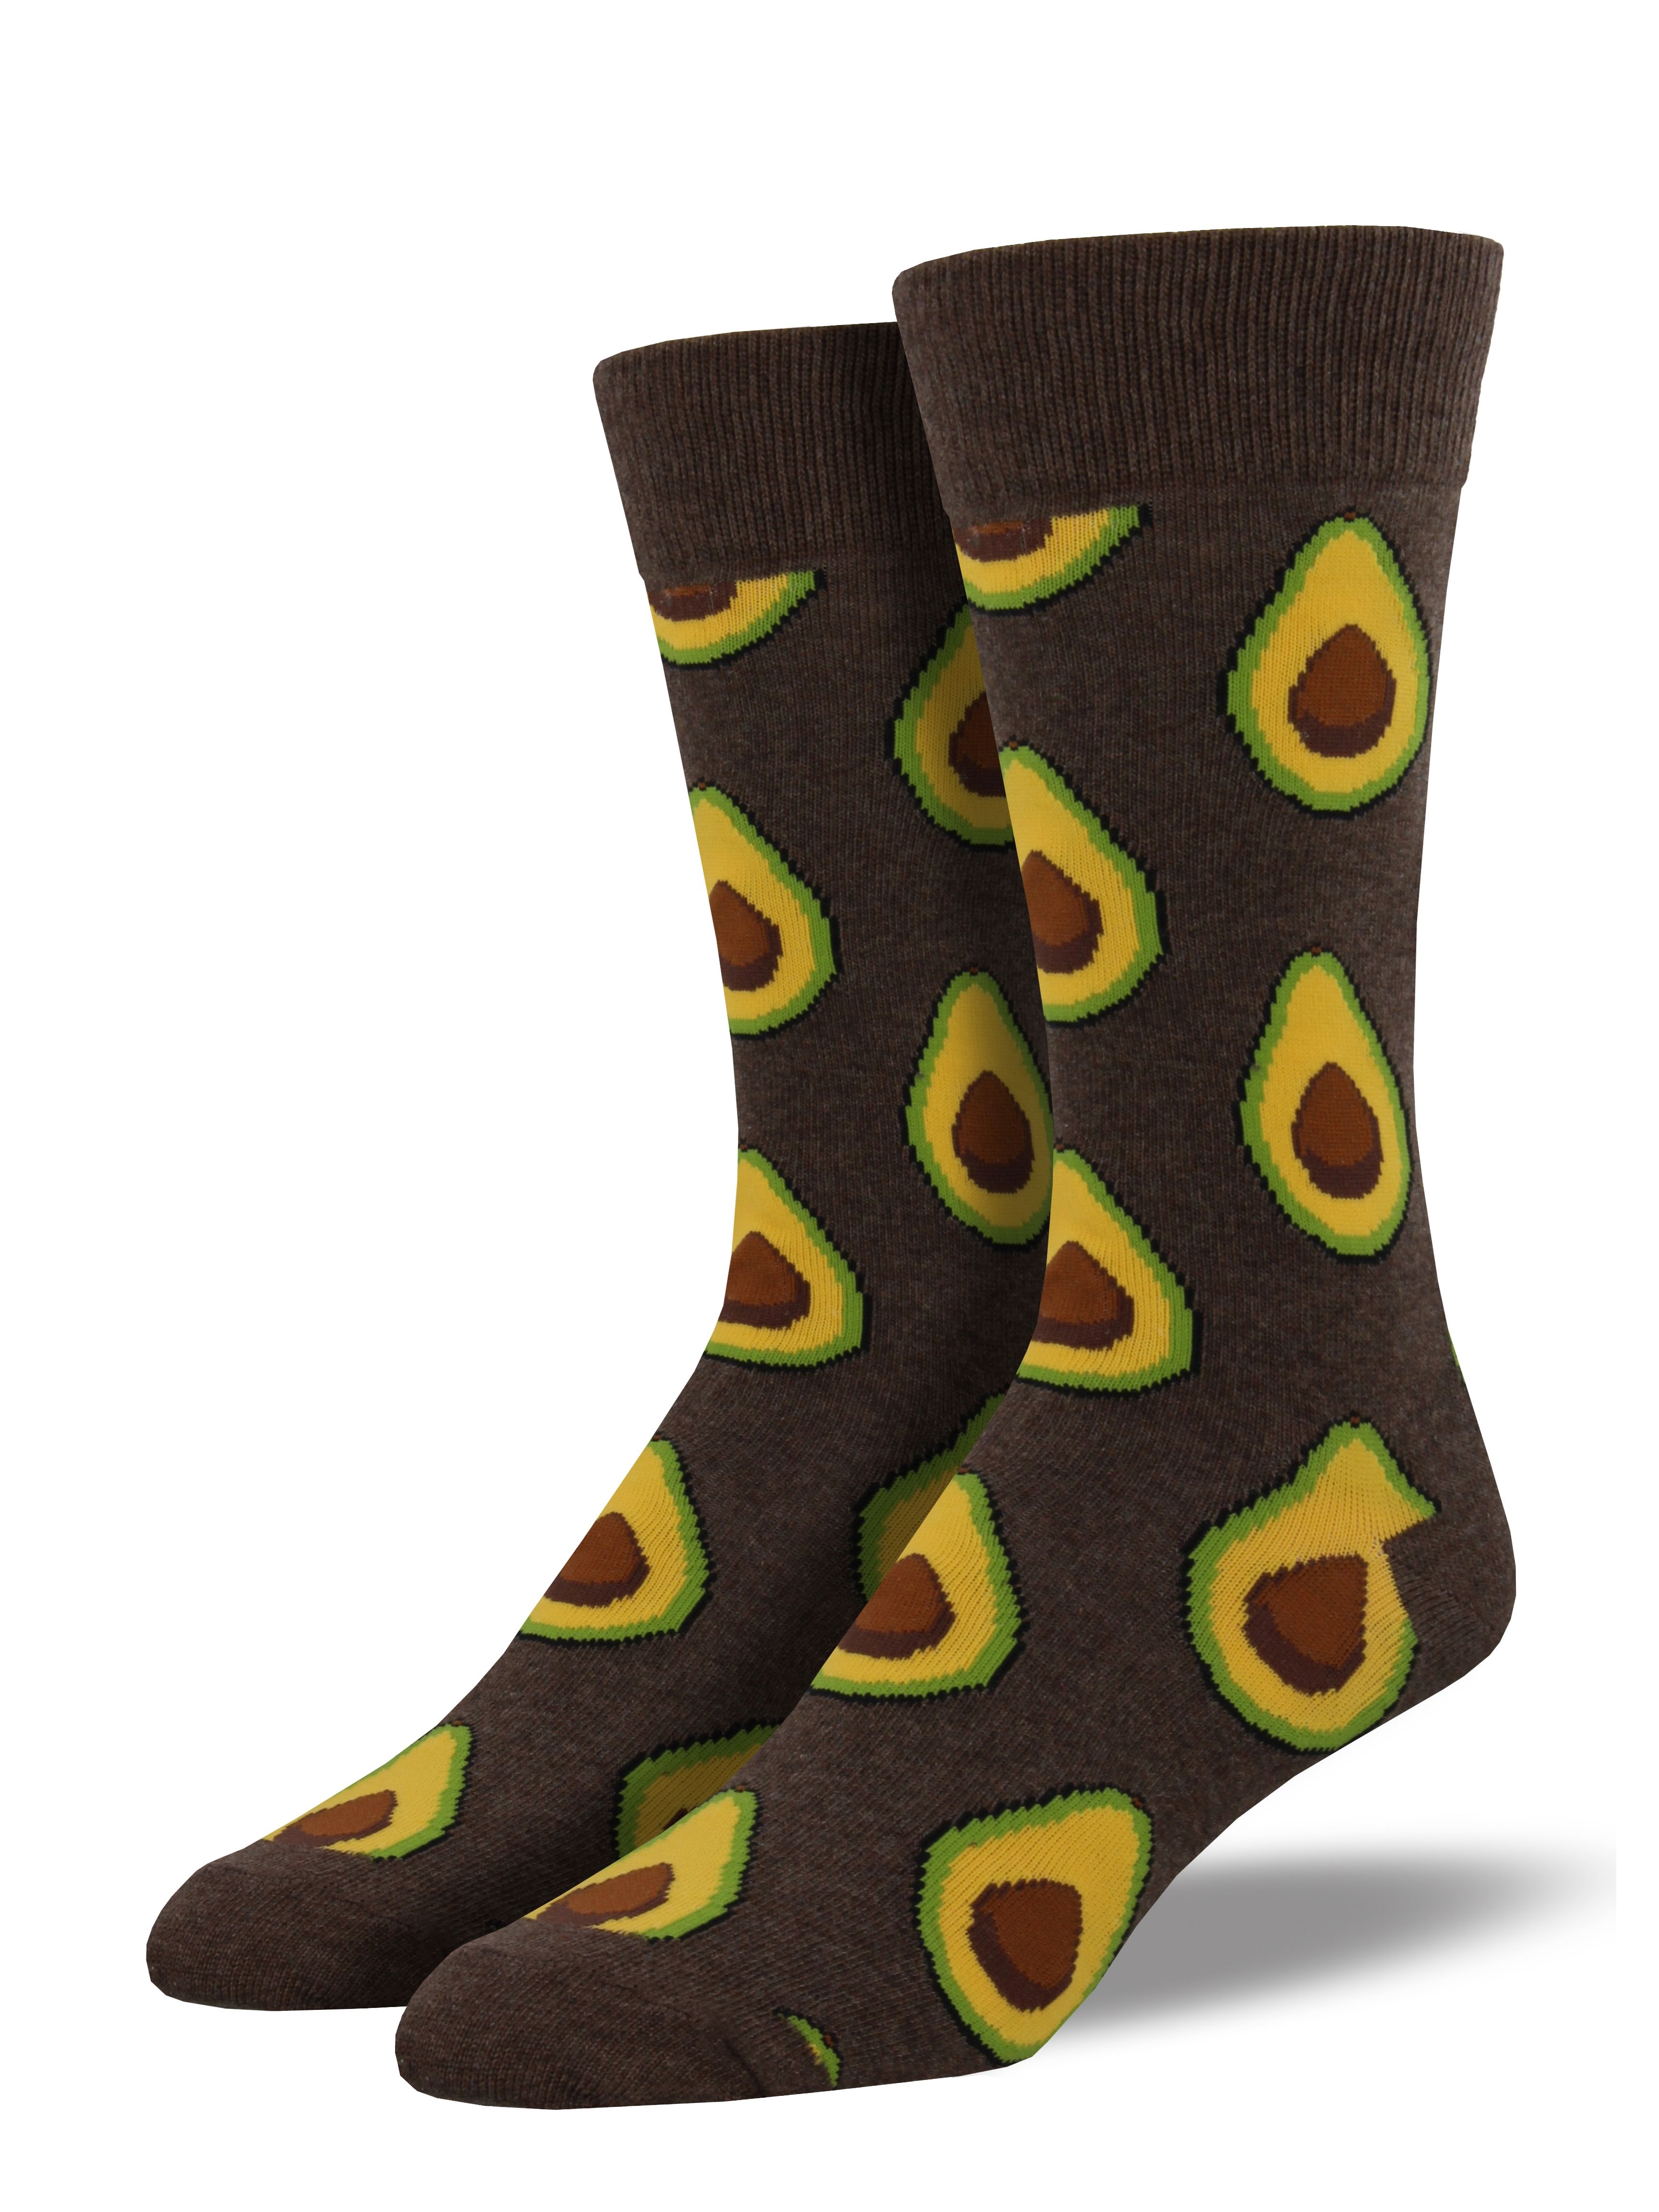 Avocado Socks - Mens Clothing-Accessories-Socks : Mariposa Clothing NZ ...